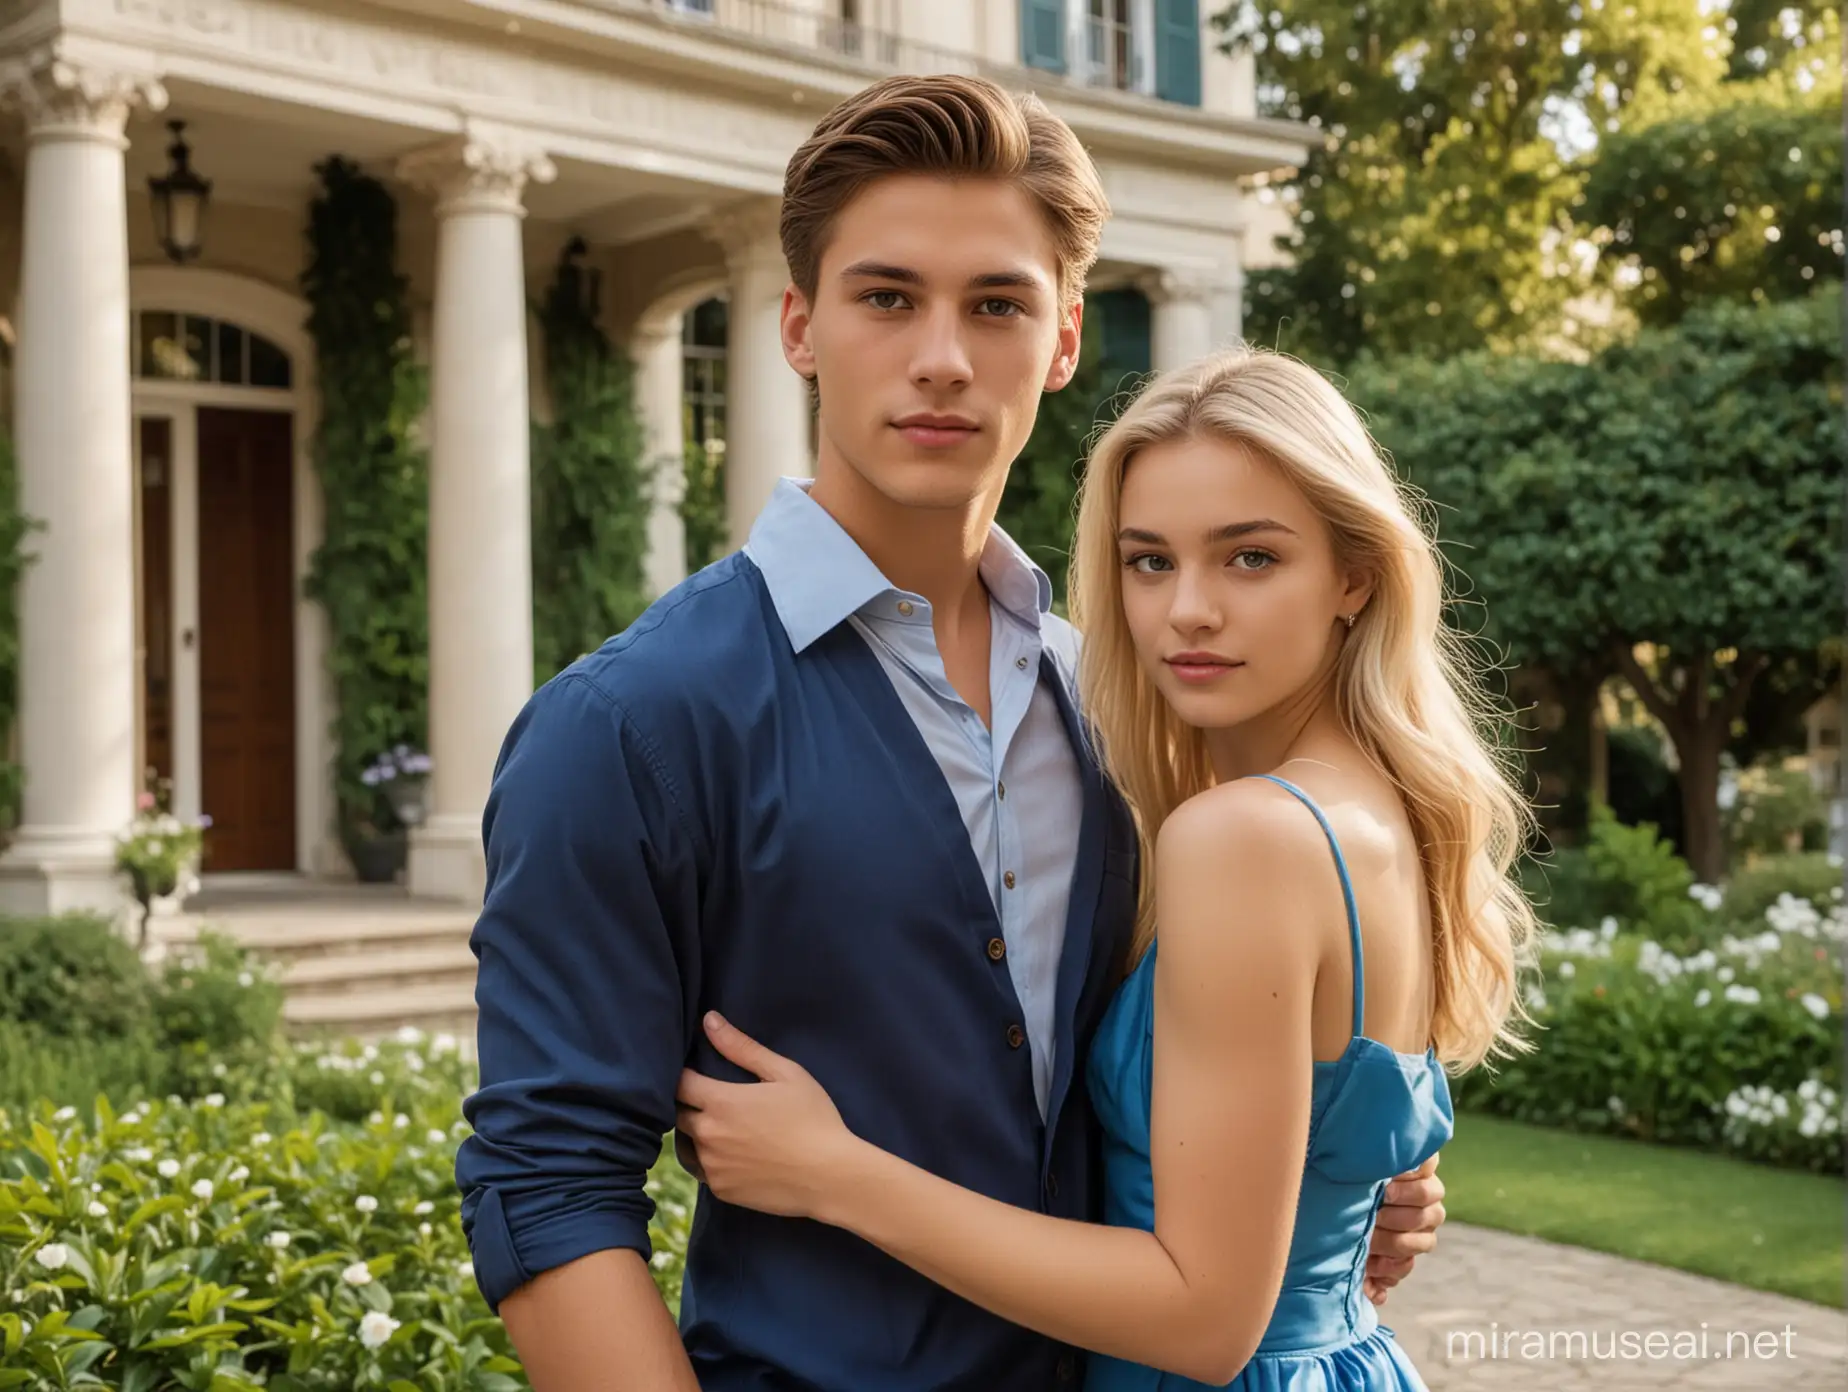 Un hombre atractivo de 20 años de cabello castaño liso, ojos cafe claro, millonario y junto a él una chica de 20 años rubia con vestido elegante azul. De fondo un jardín de una mansión.